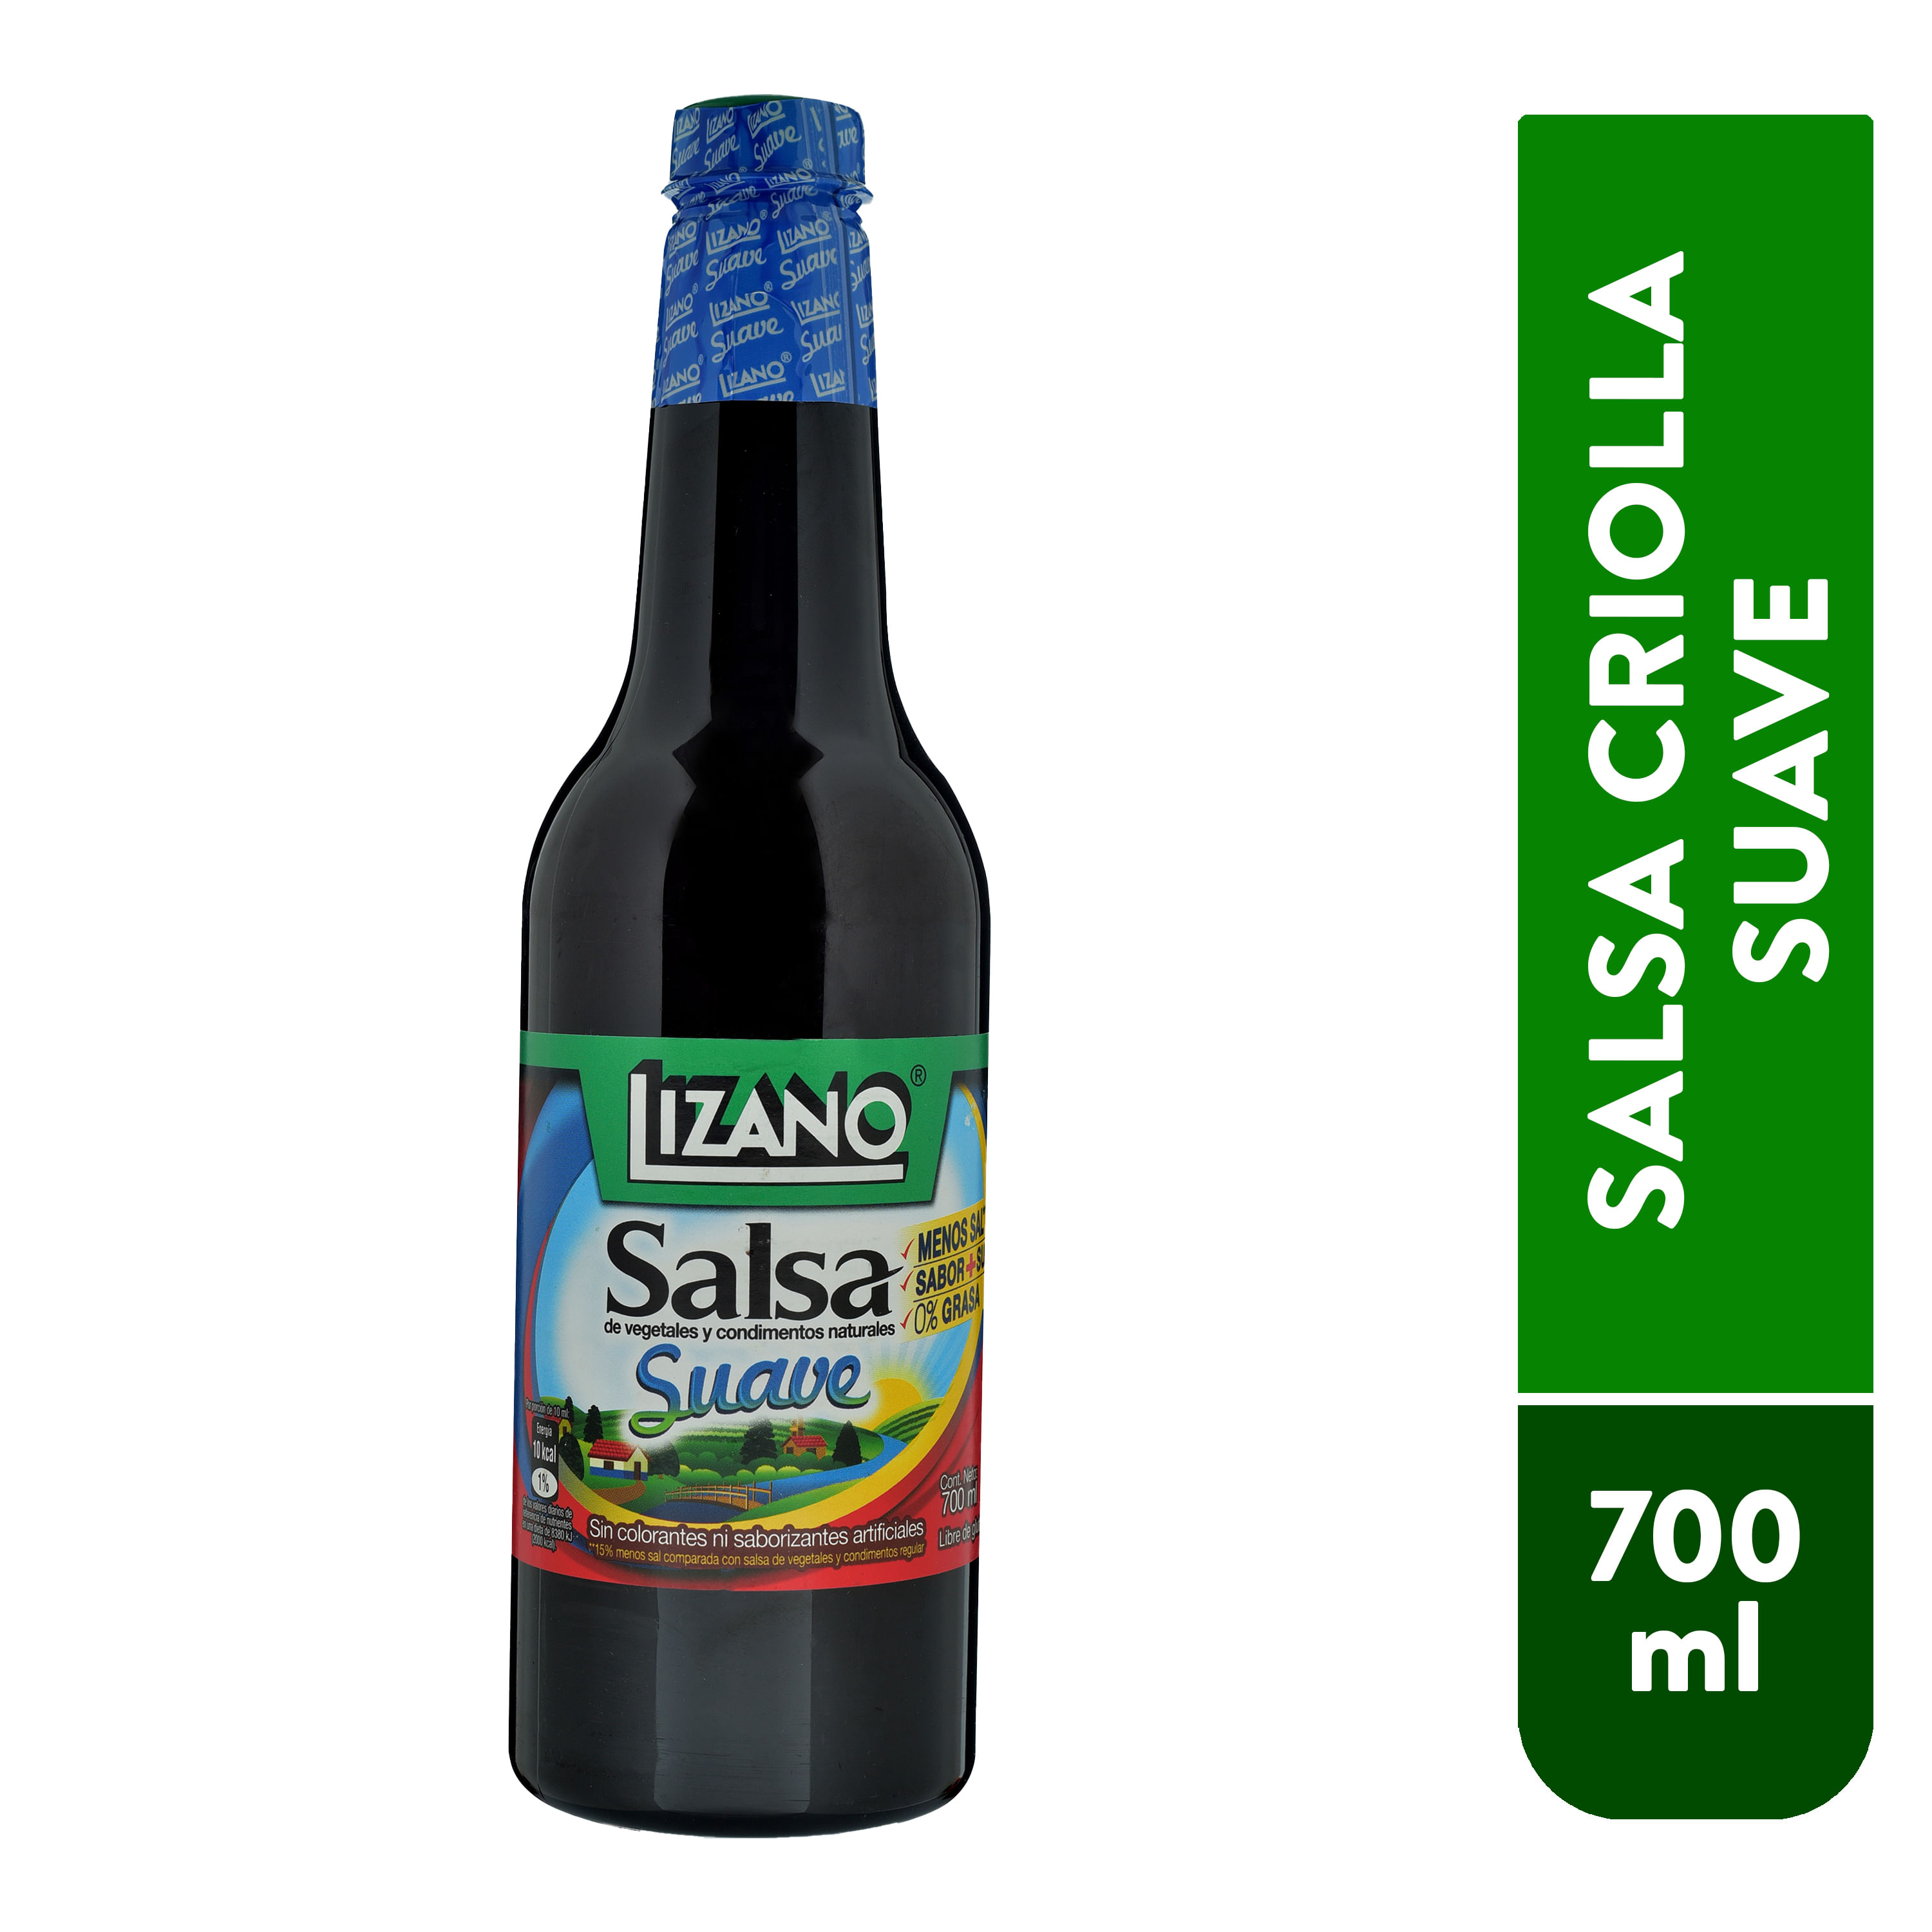 Salsa-Criolla-Lizano-Suave-Botella-700ml-1-26025